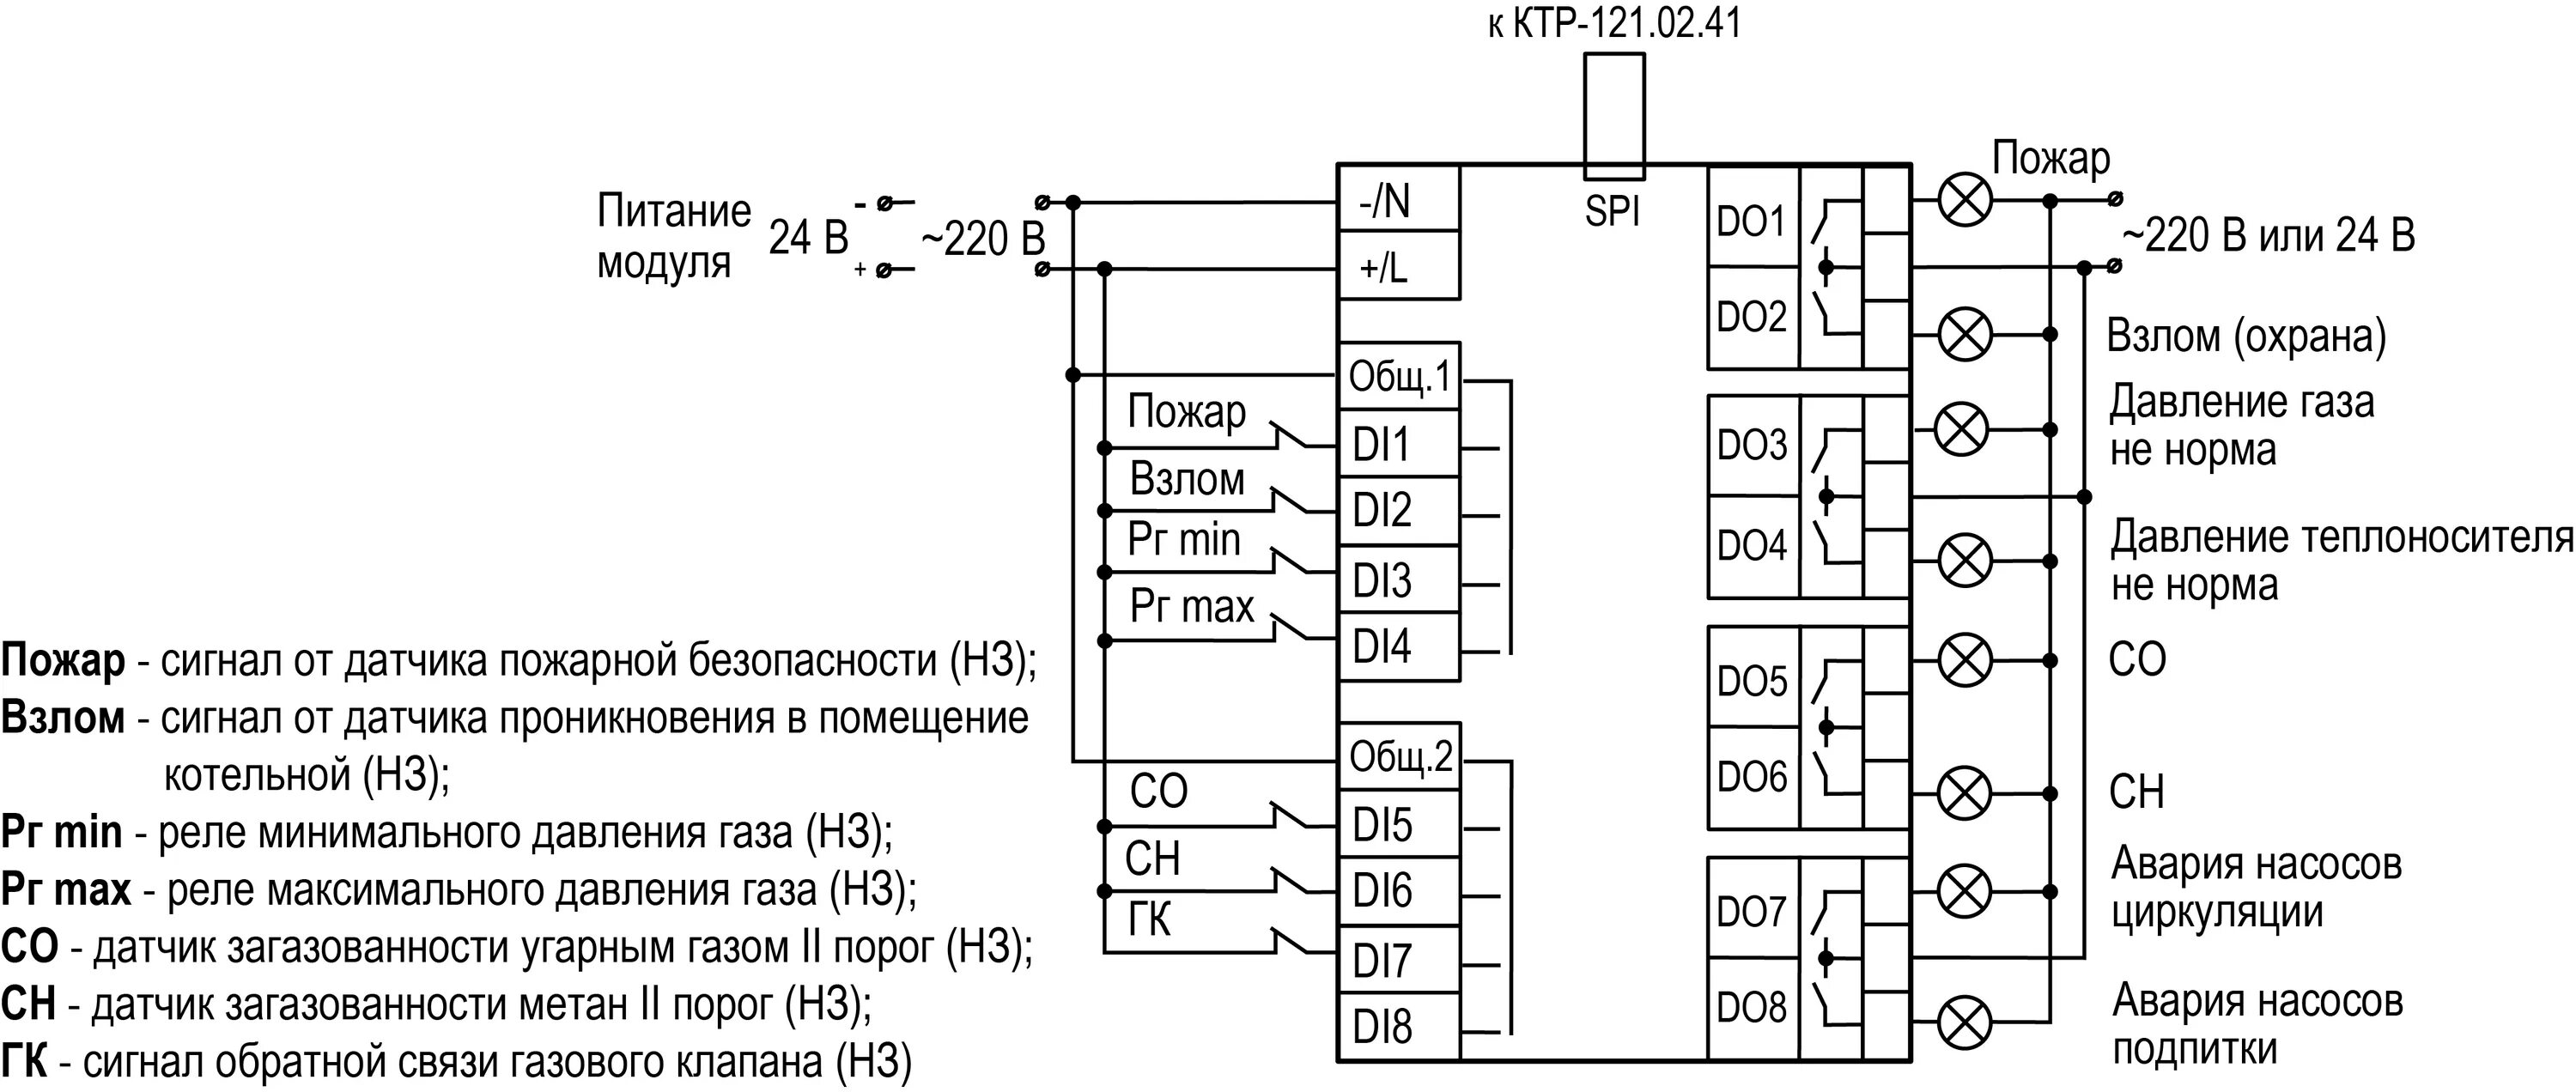 Ктр прочее. Схема подключения модуля ПРМ 24. Схема электрическая принципиальная ктр121. Каскадный контроллер КТР 121.02. ПРМ-220.3 схема.